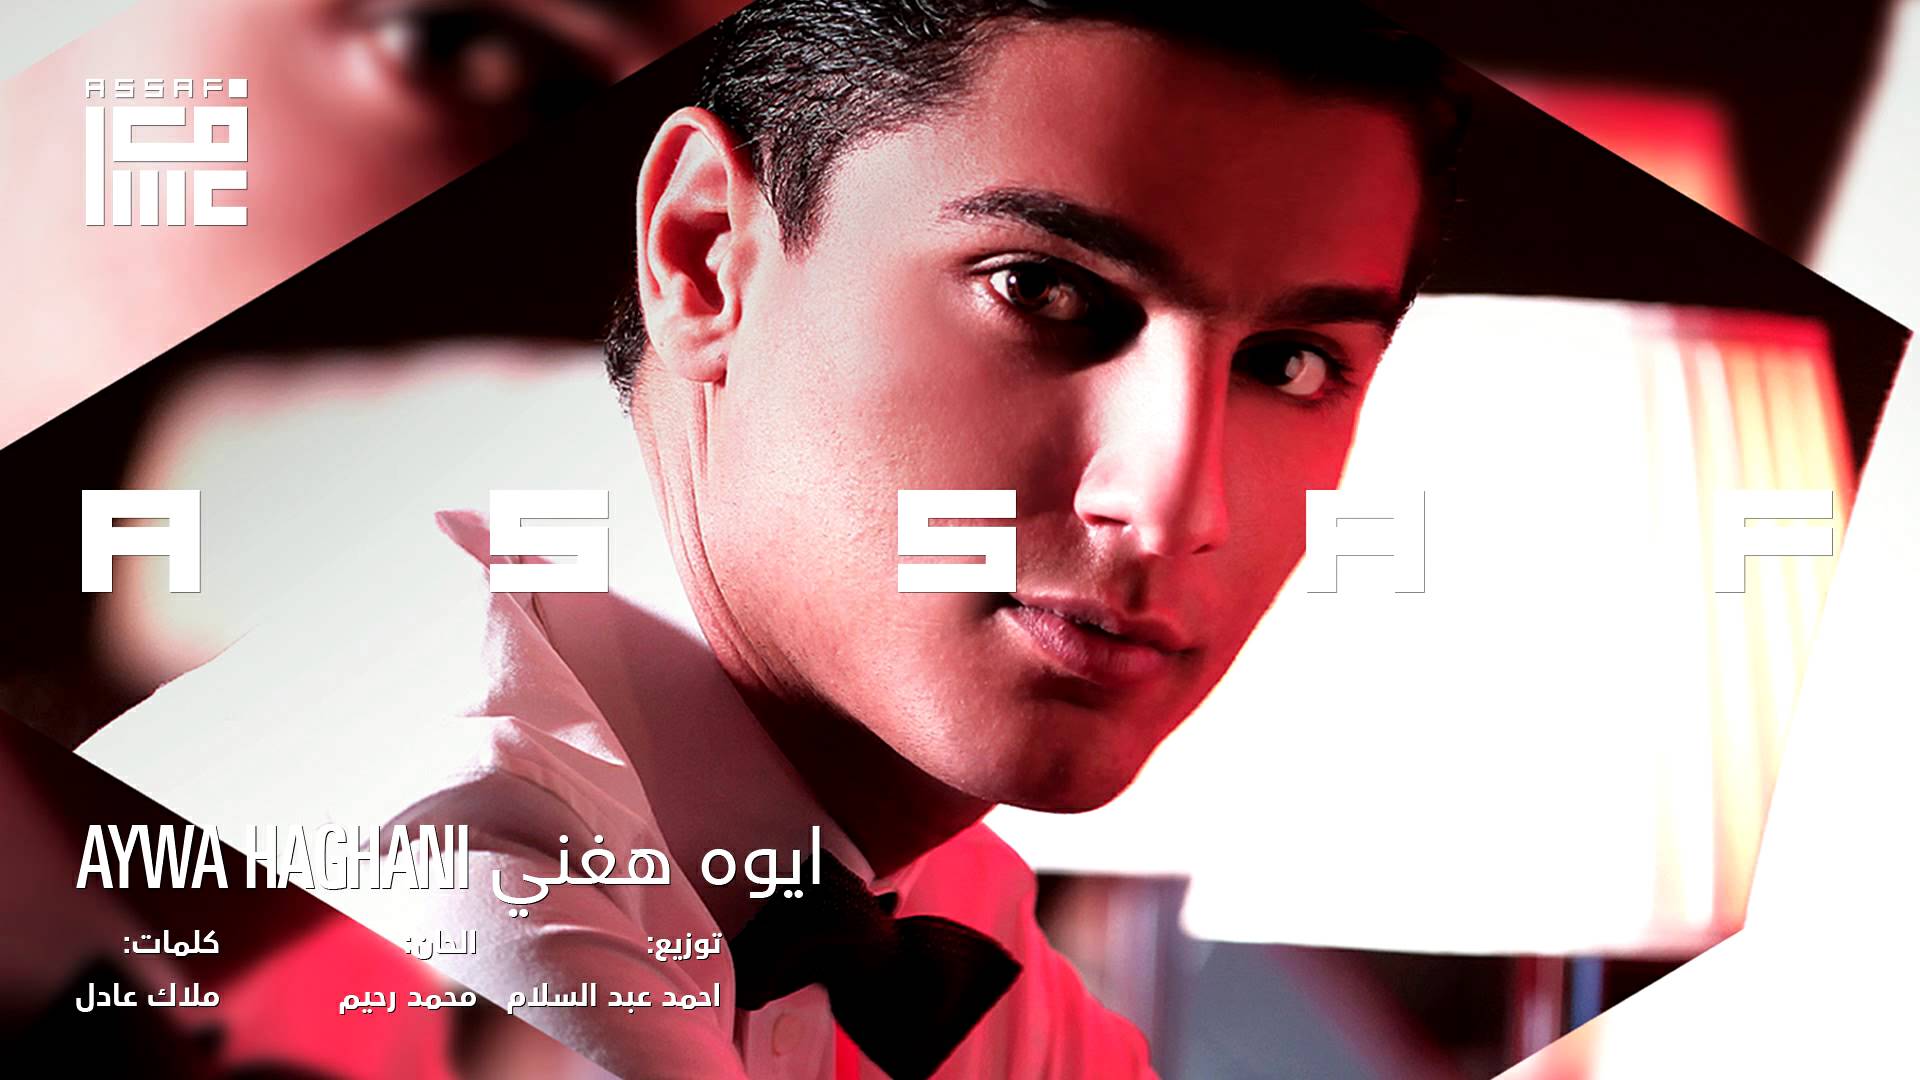 يوتيوب تحميل اغنية ايوه هغني محمد عساف 2014 Mp3 نسخة أصلية